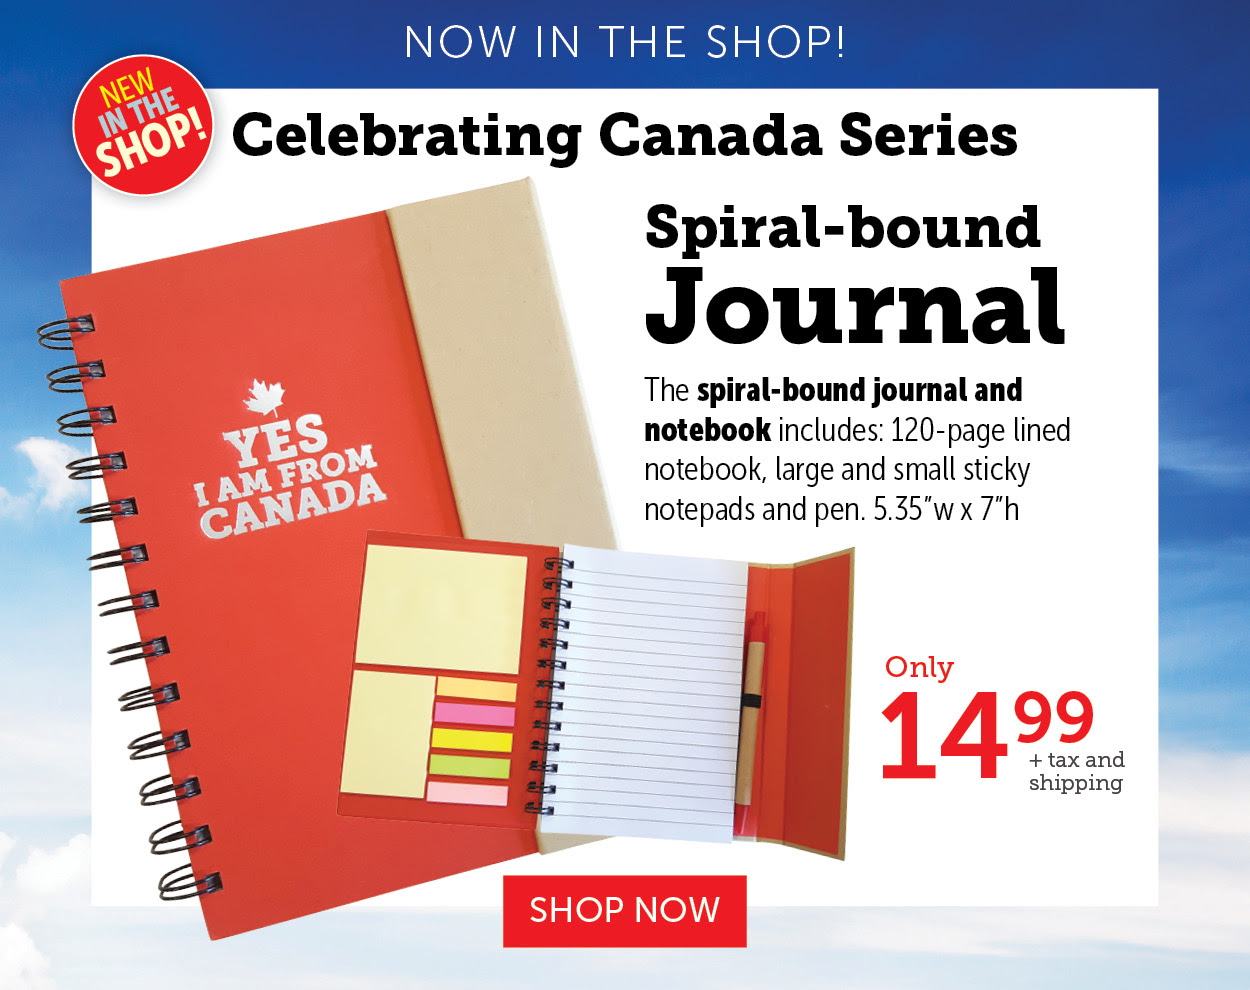 Spiral-bound journal